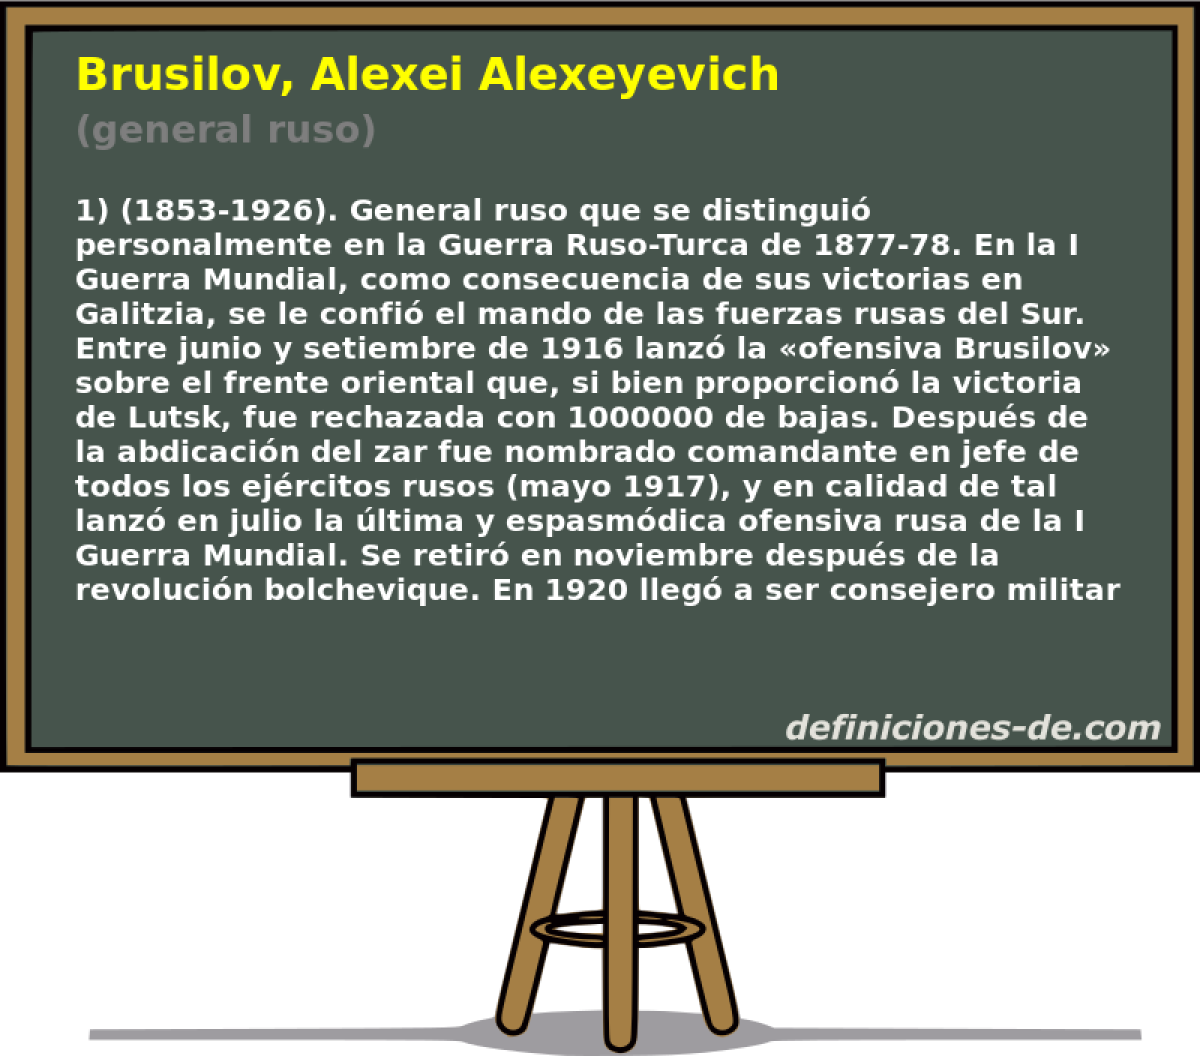 Brusilov, Alexei Alexeyevich (general ruso)